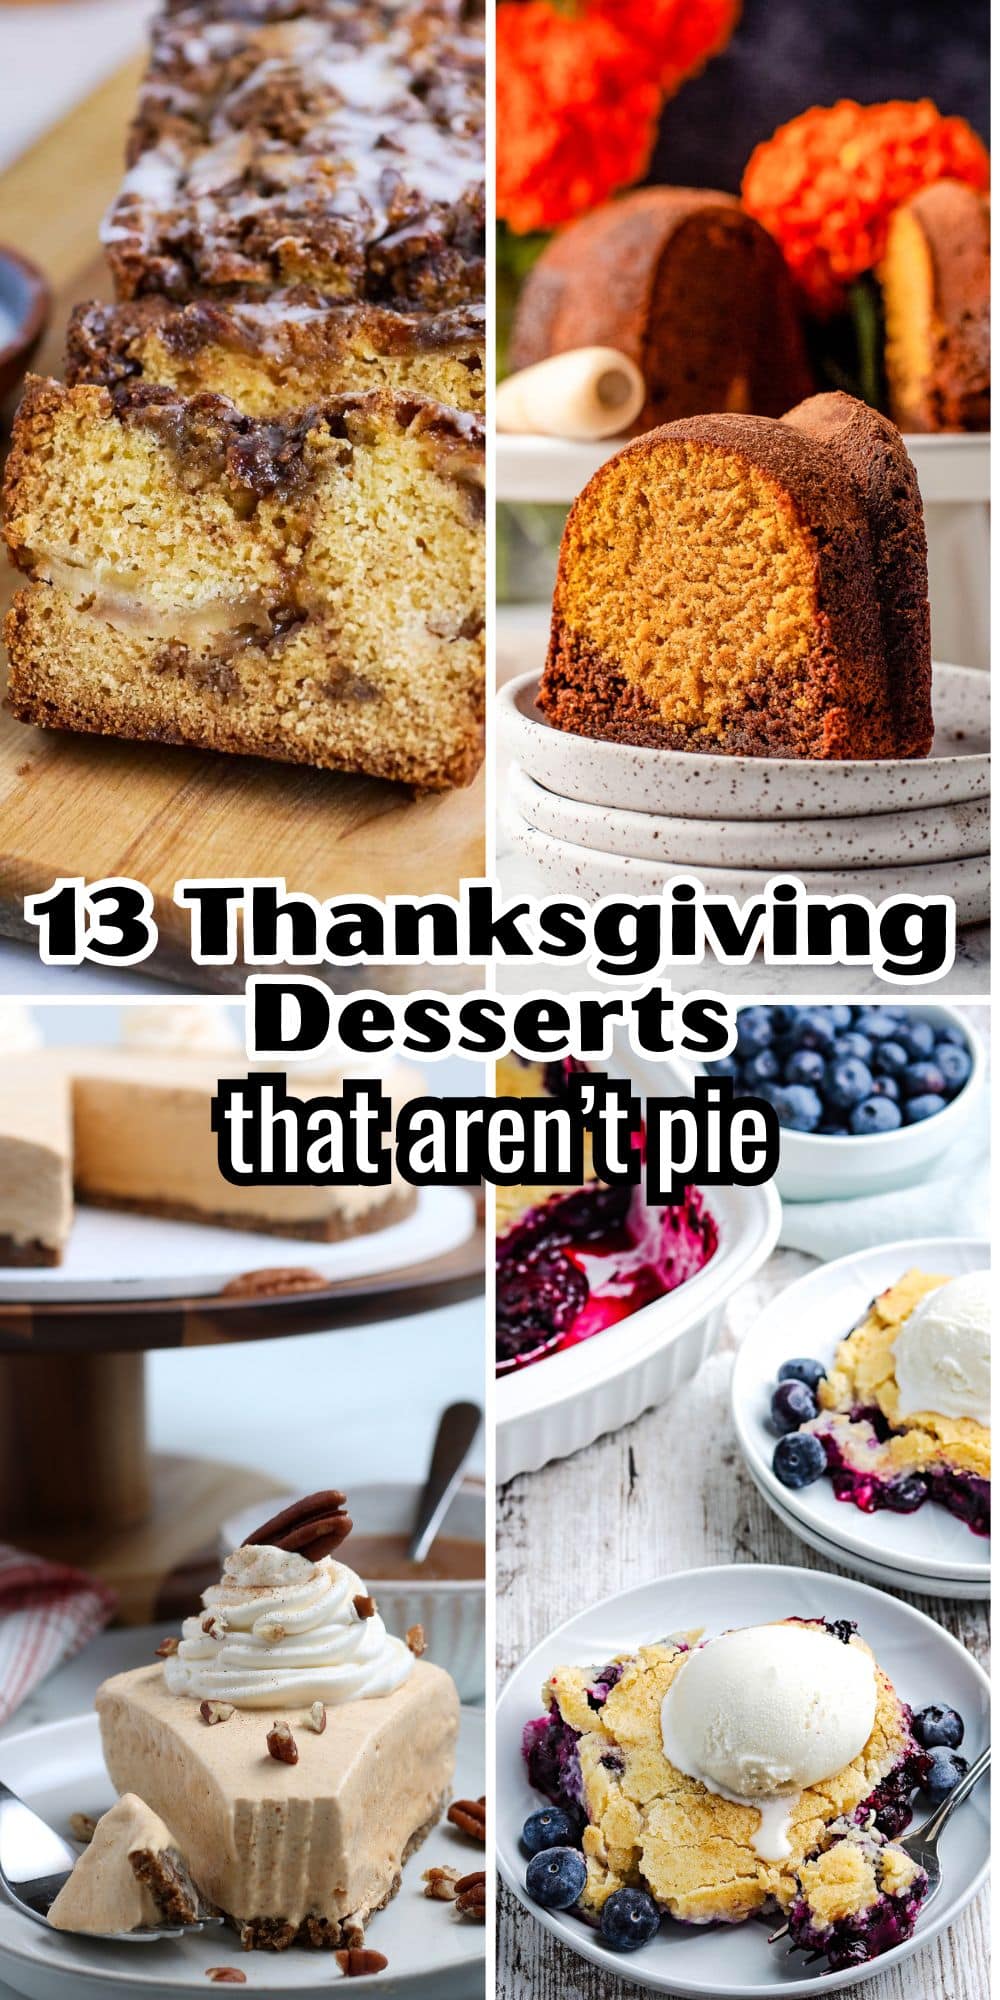 13 thanksgiving desserts that aren't pie.